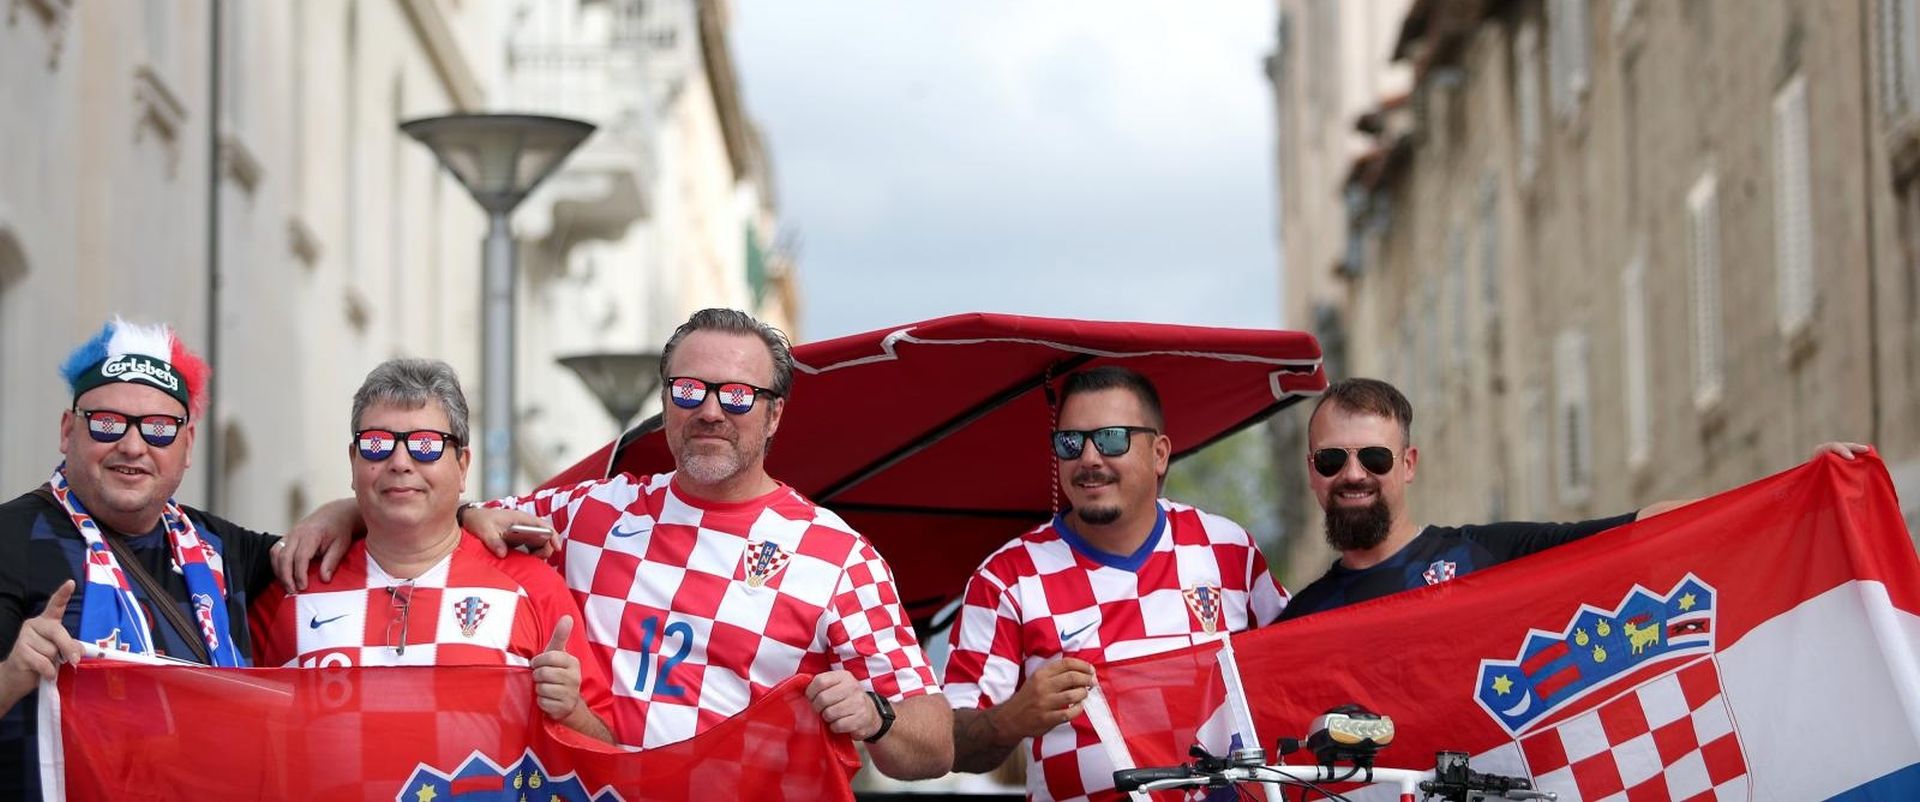 10.10.2019., Split - Navijaci se okupljaj uu gradu uoci kvalifikacijske utakmice za Europsko prvenstvo izmedju Hrvatske i Madjarske. Photo: Igor Soban/PIXSELL